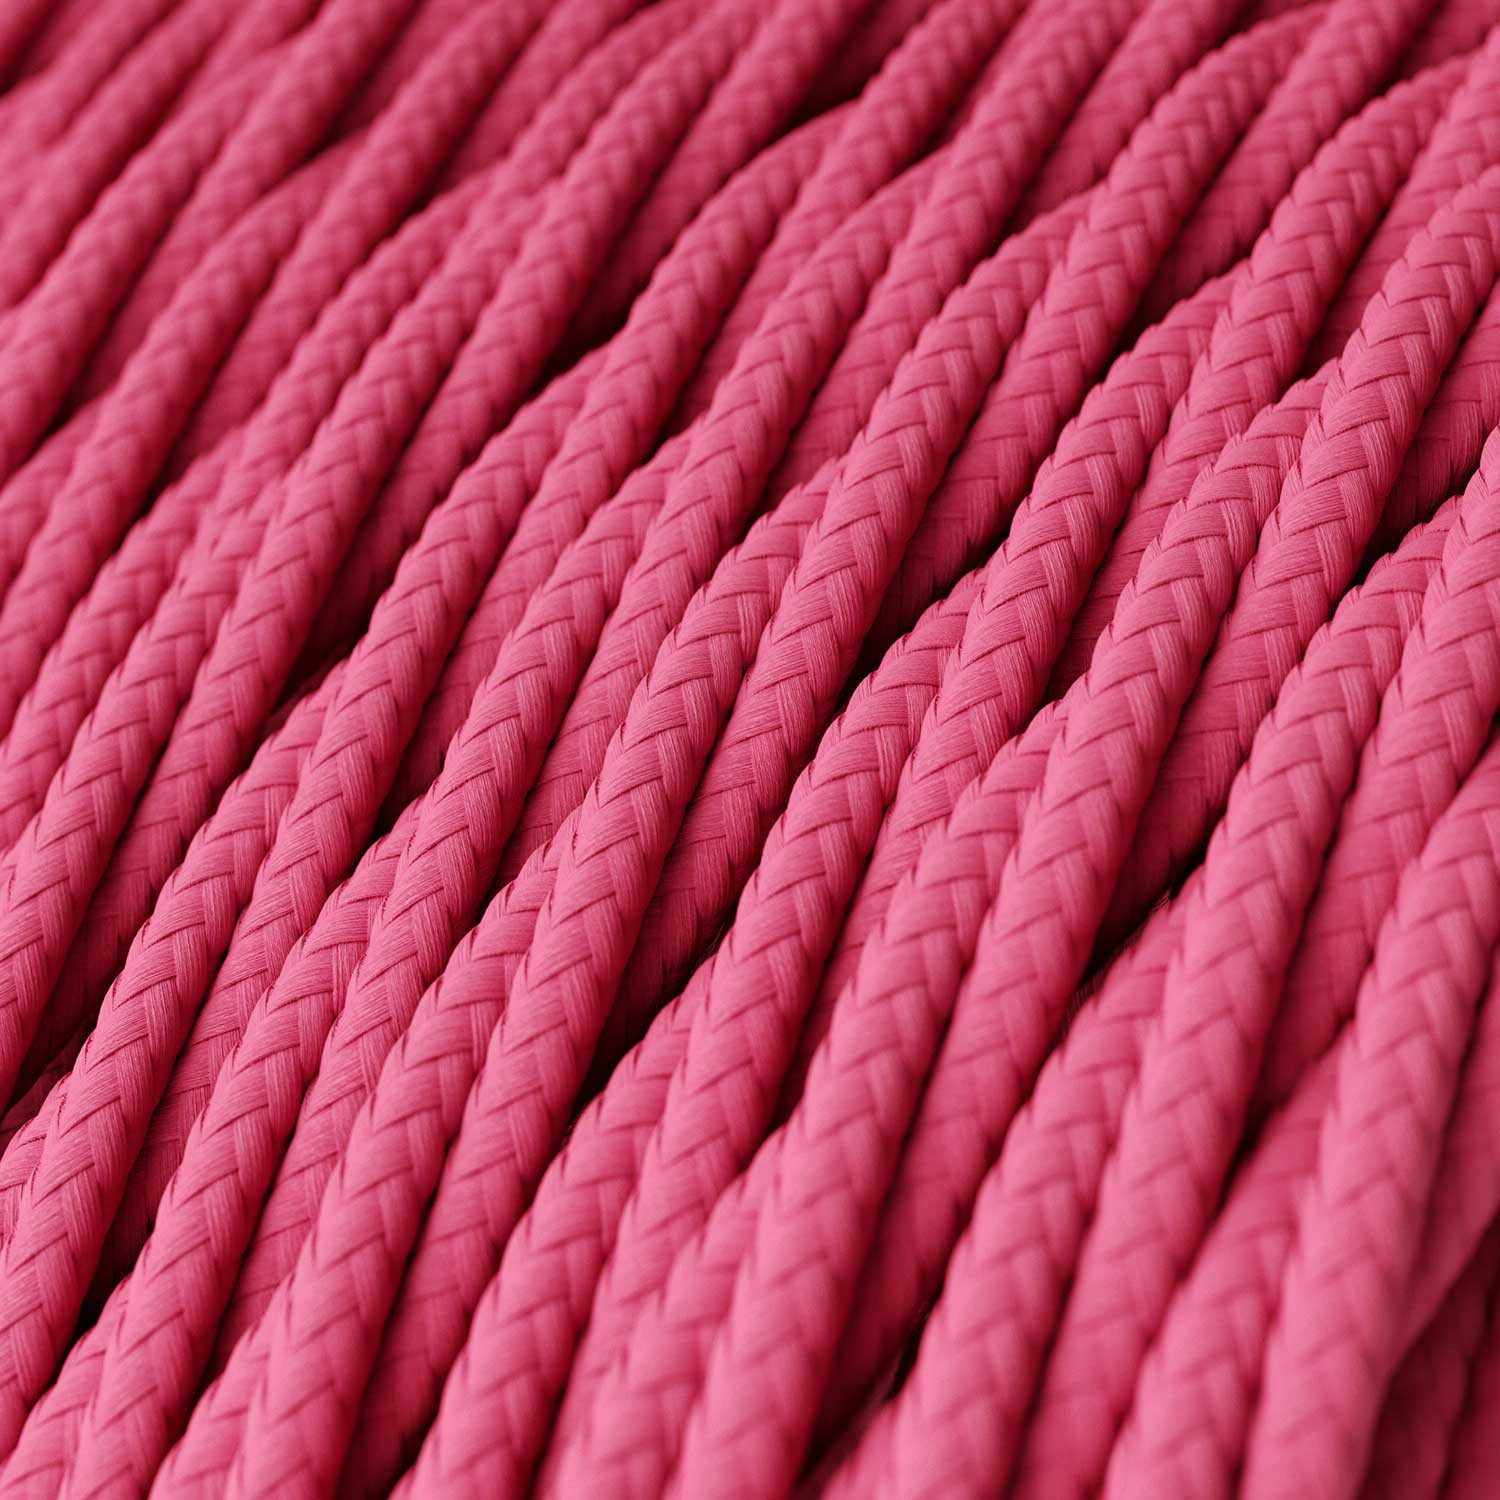 Cavo tessile Rosa Fucsia lucido - L'Originale Creative-Cables - TM08 trecciato 2x0,75mm / 3x0,75mm